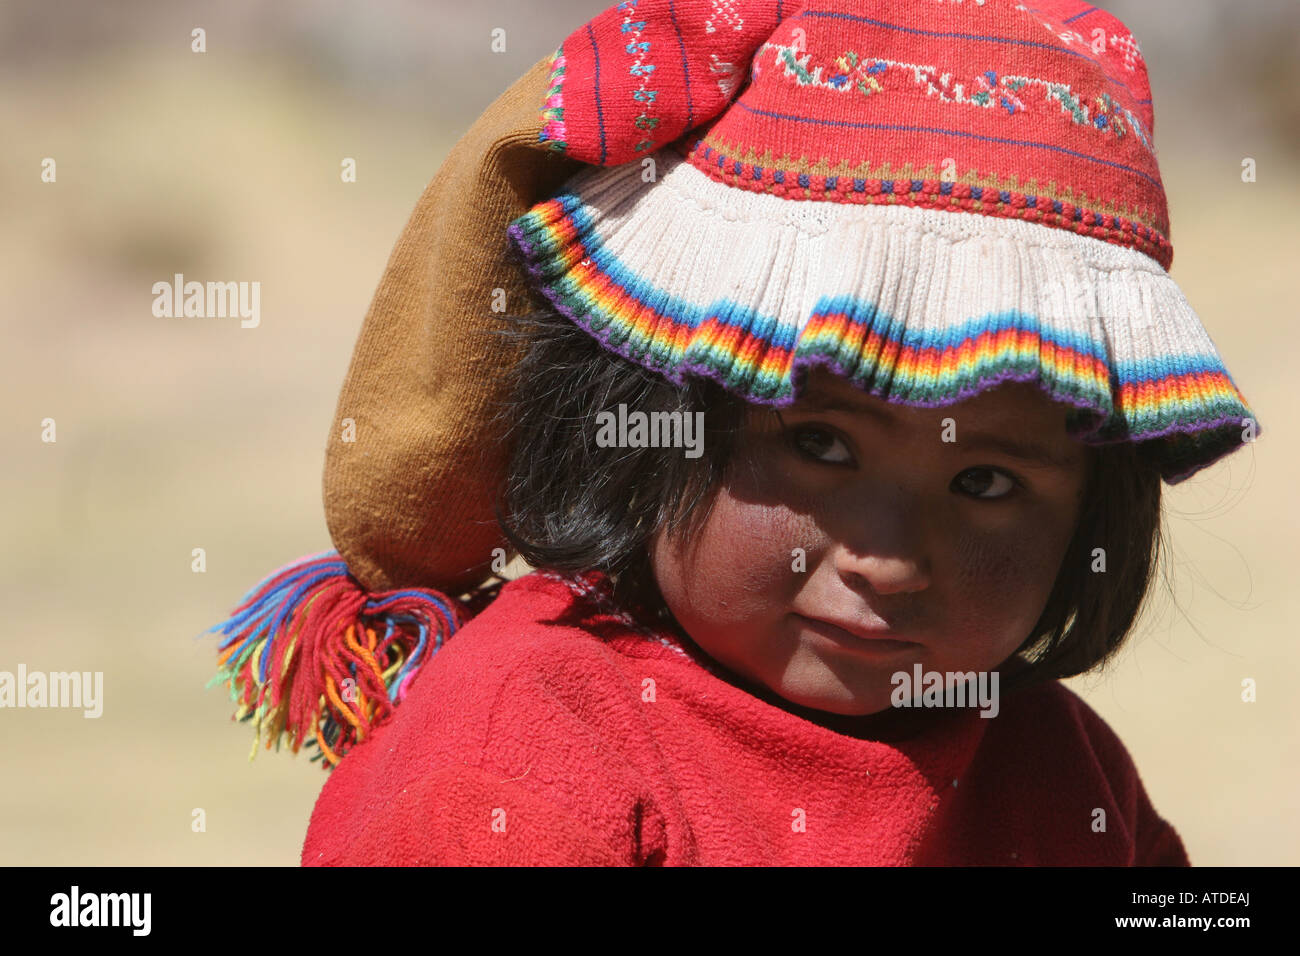 Un jeune enfant péruvien sur l'île de Taquile au Pérou Banque D'Images